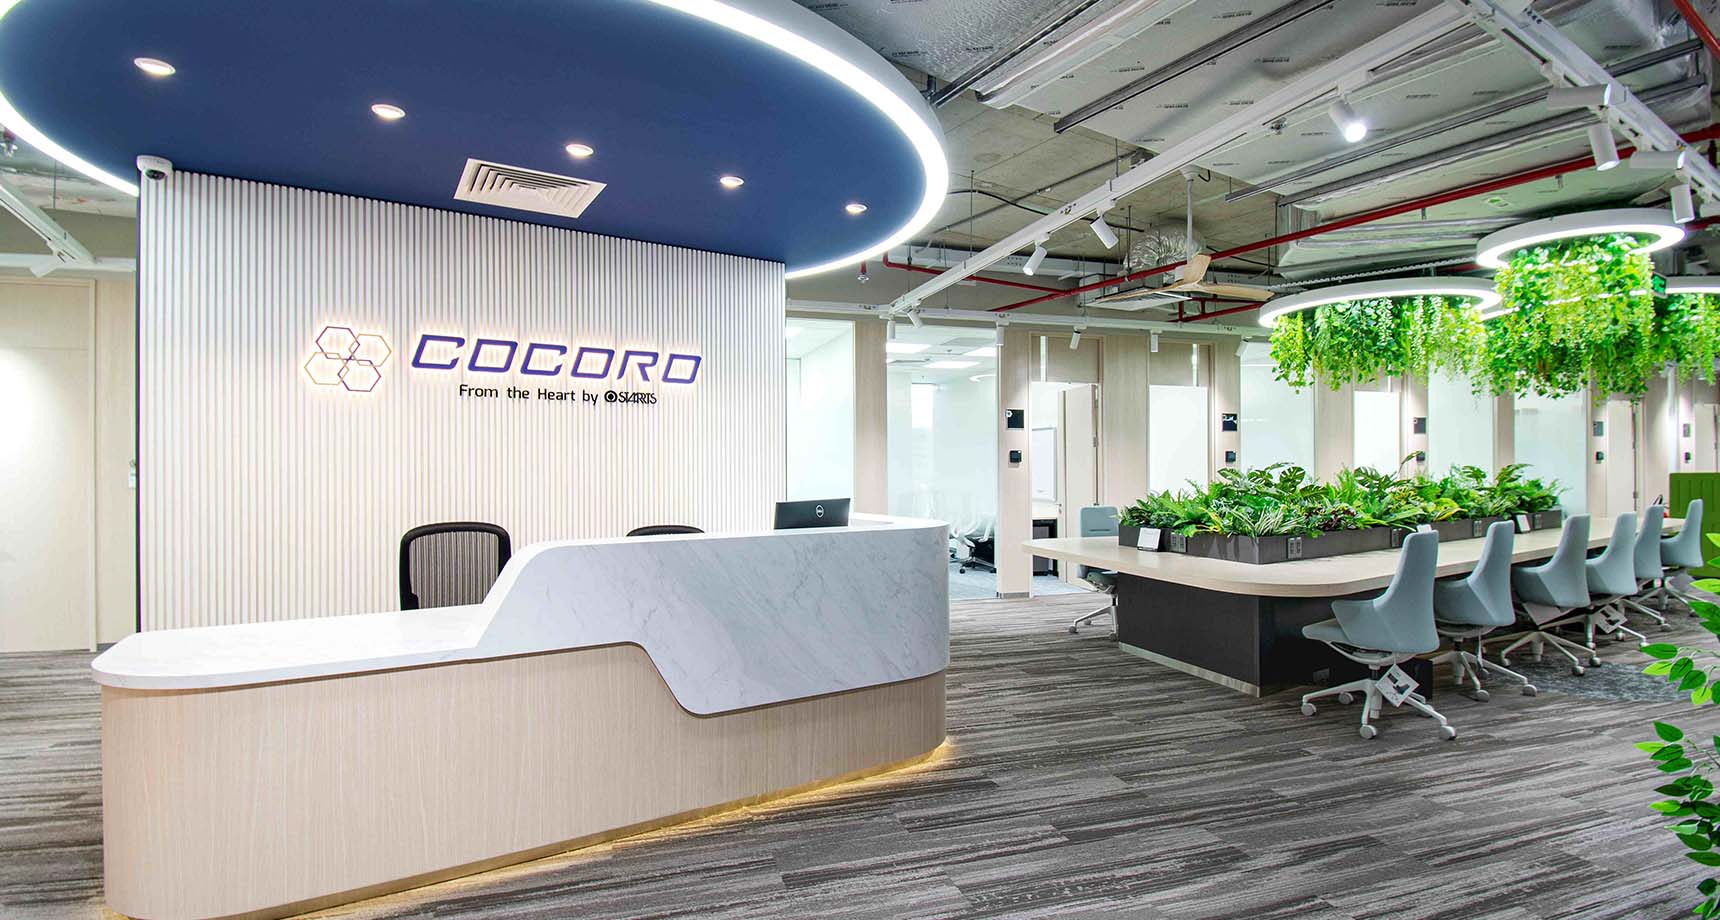 COCOROのこもった温かい空間で、ベトナムビジネスの加速を。